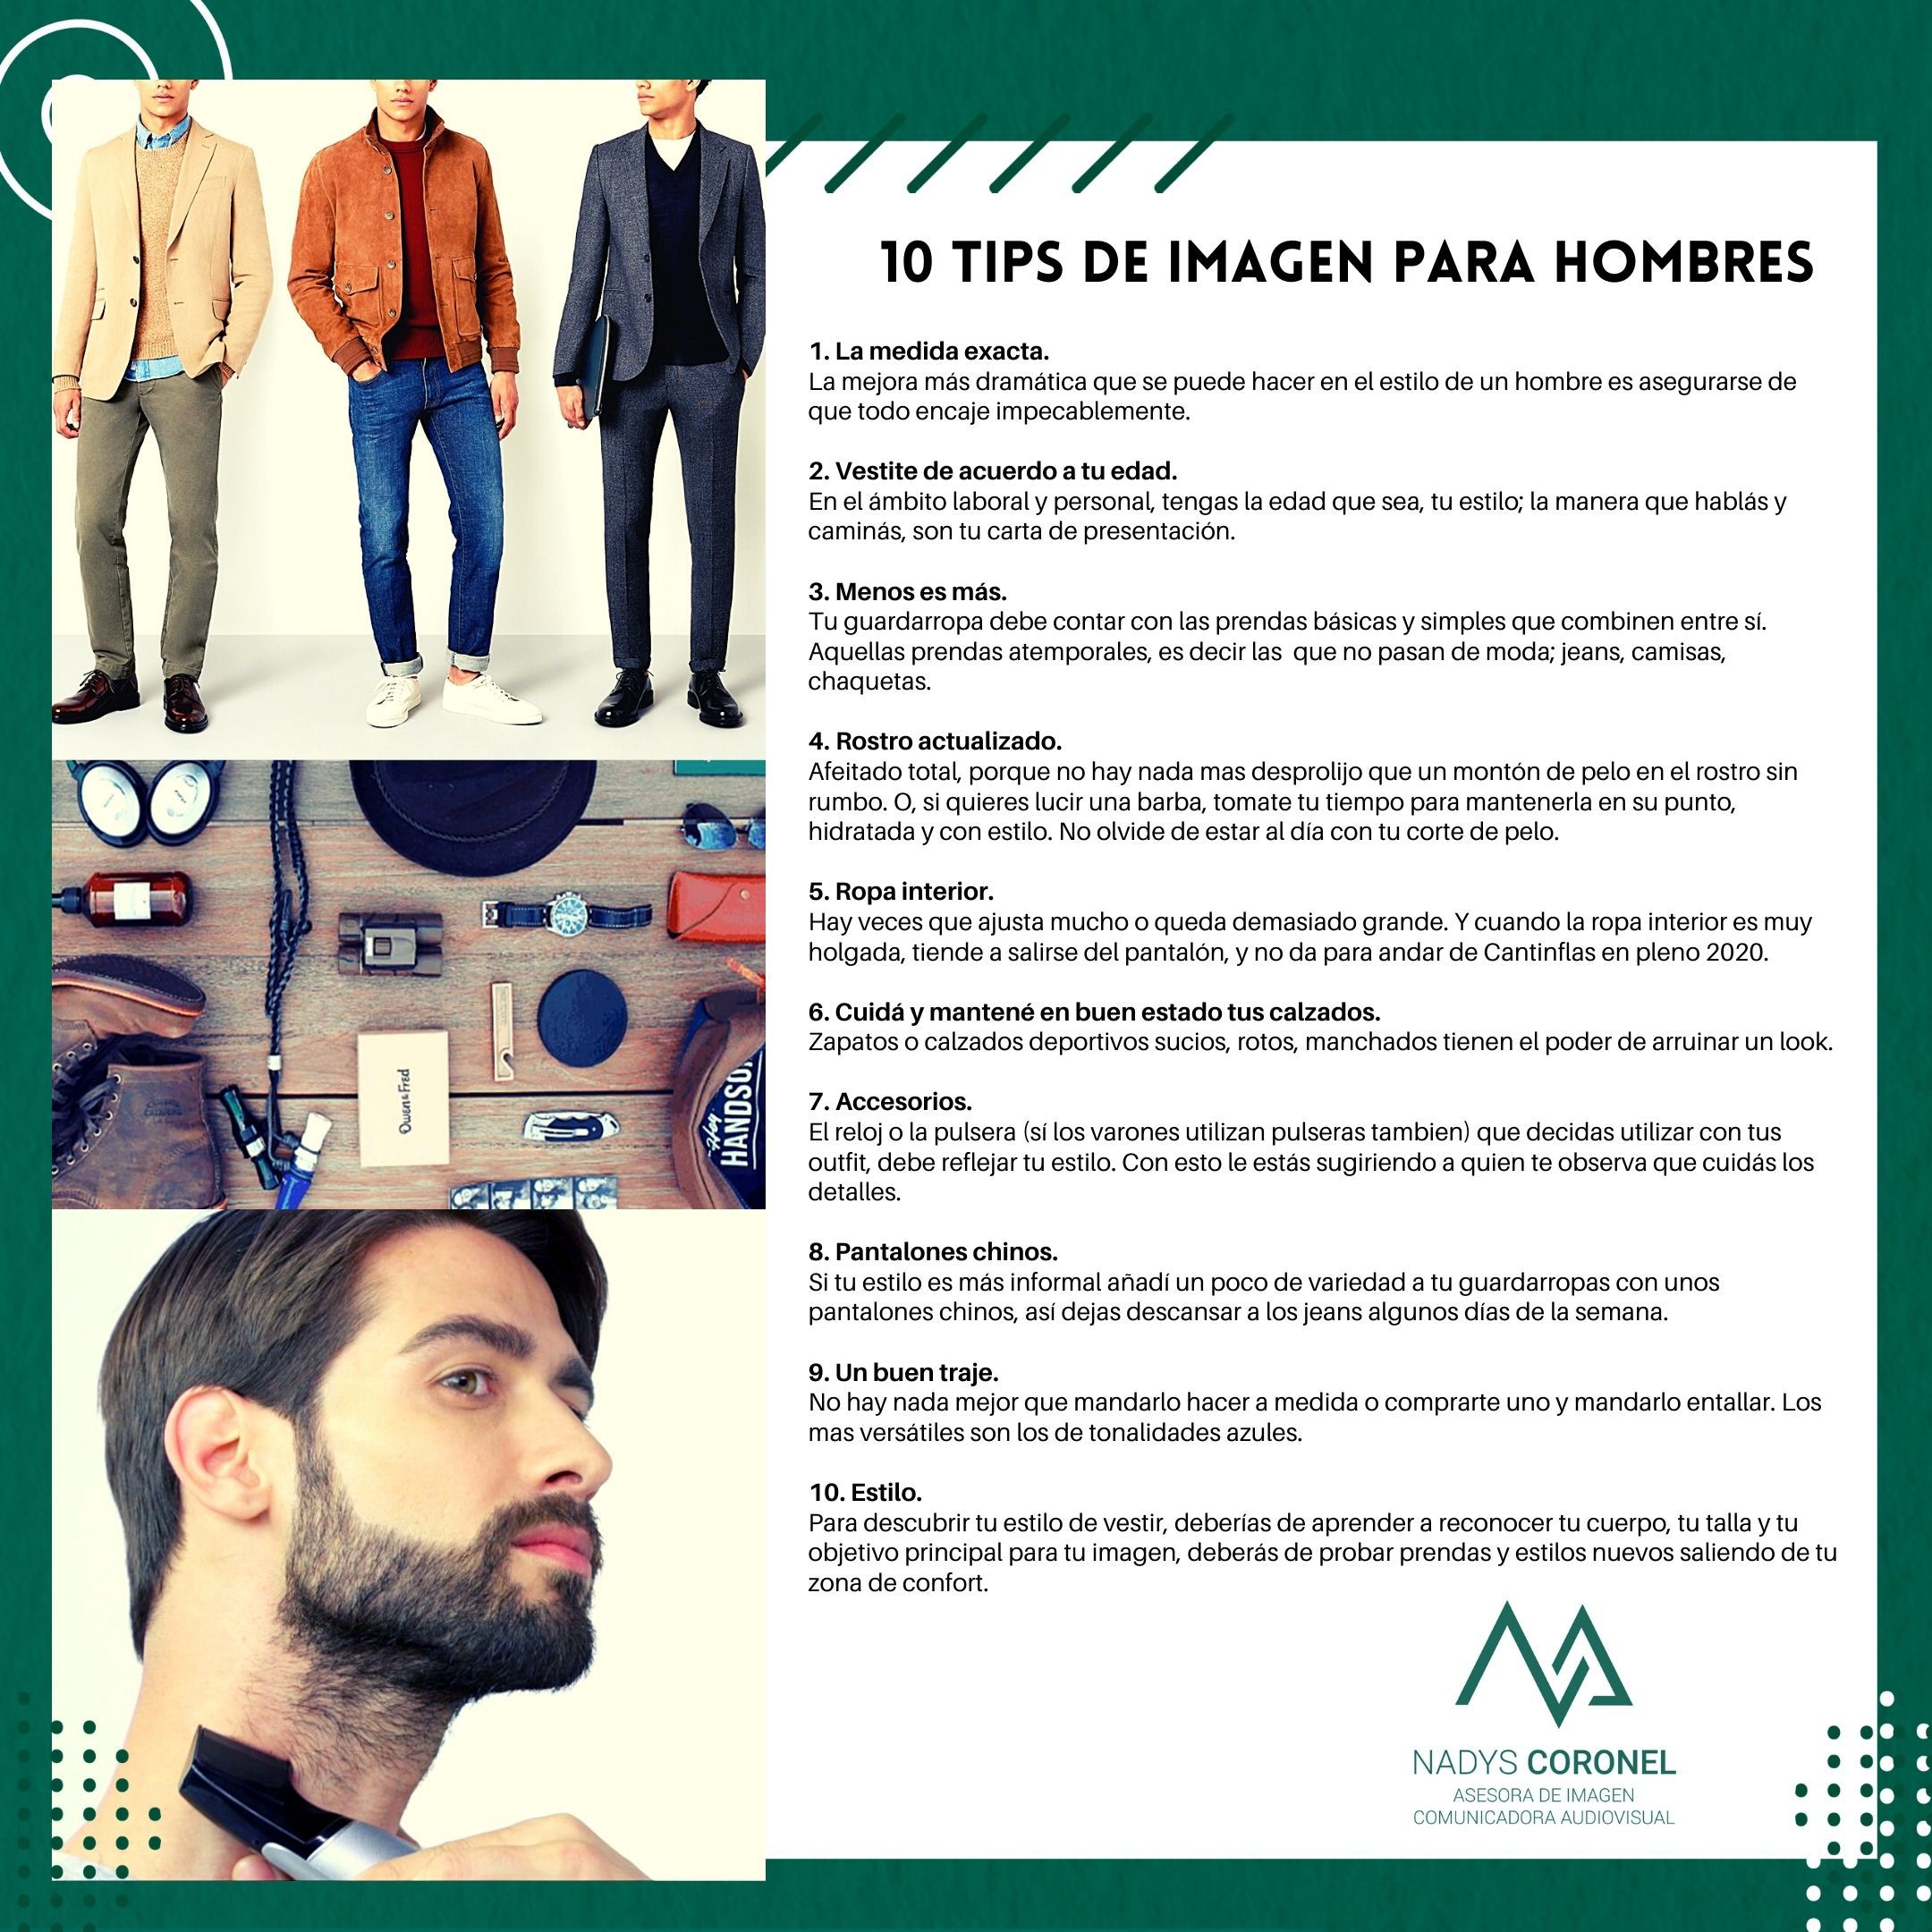 La Nación / Los 10 tips de imagen para hombres